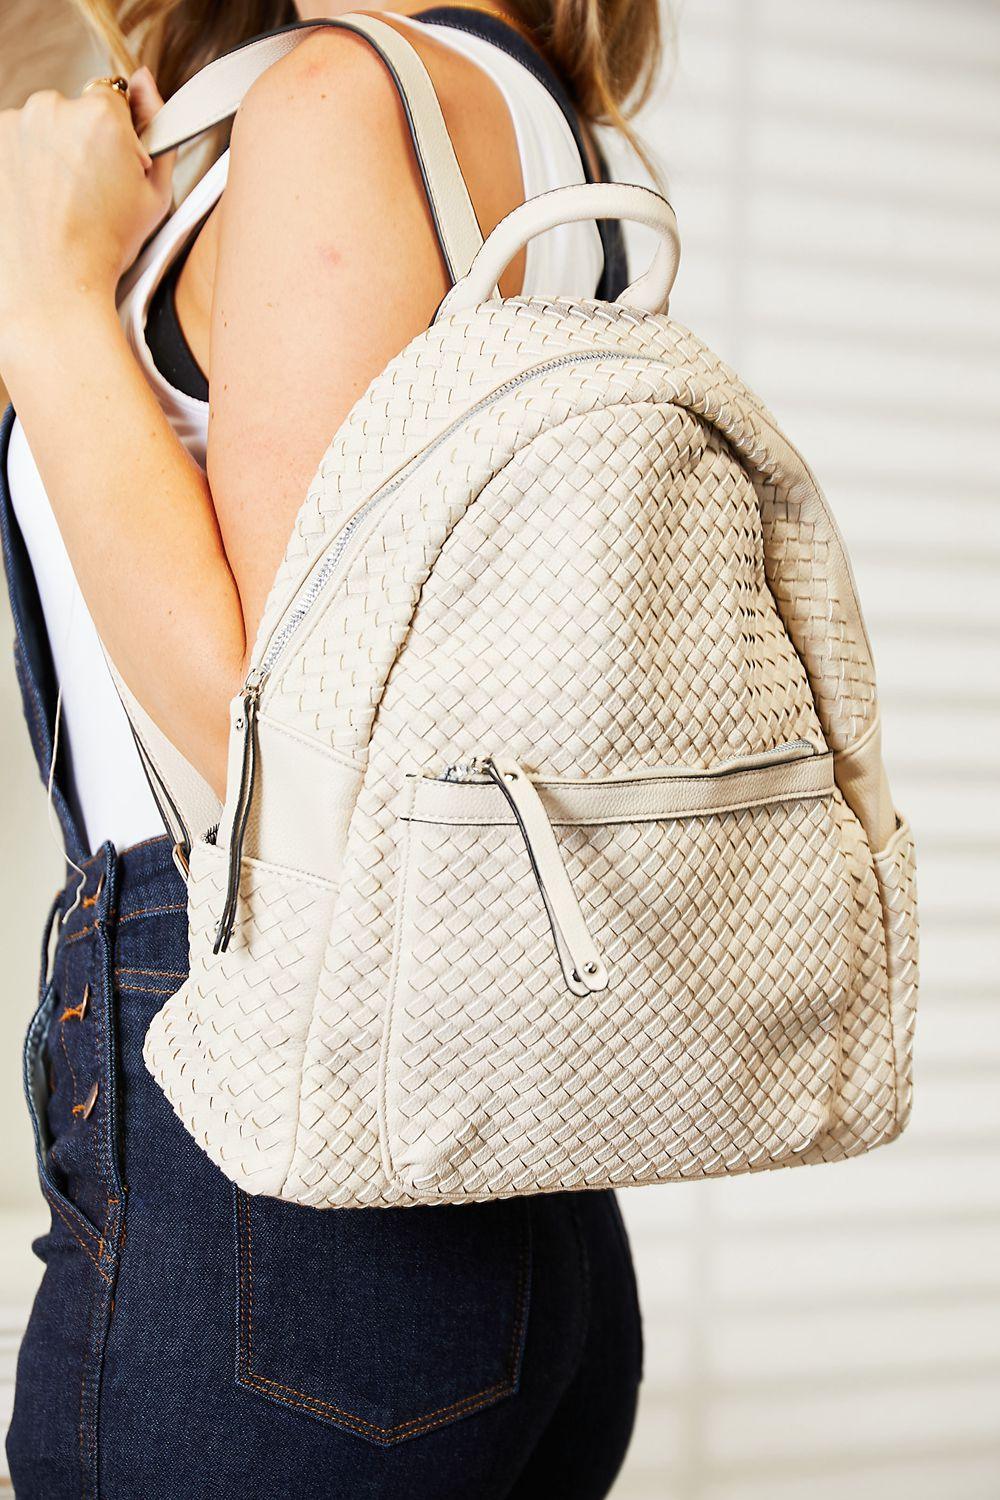 SHOMICO PU Leather Backpack - Lab Fashion, Home & Health